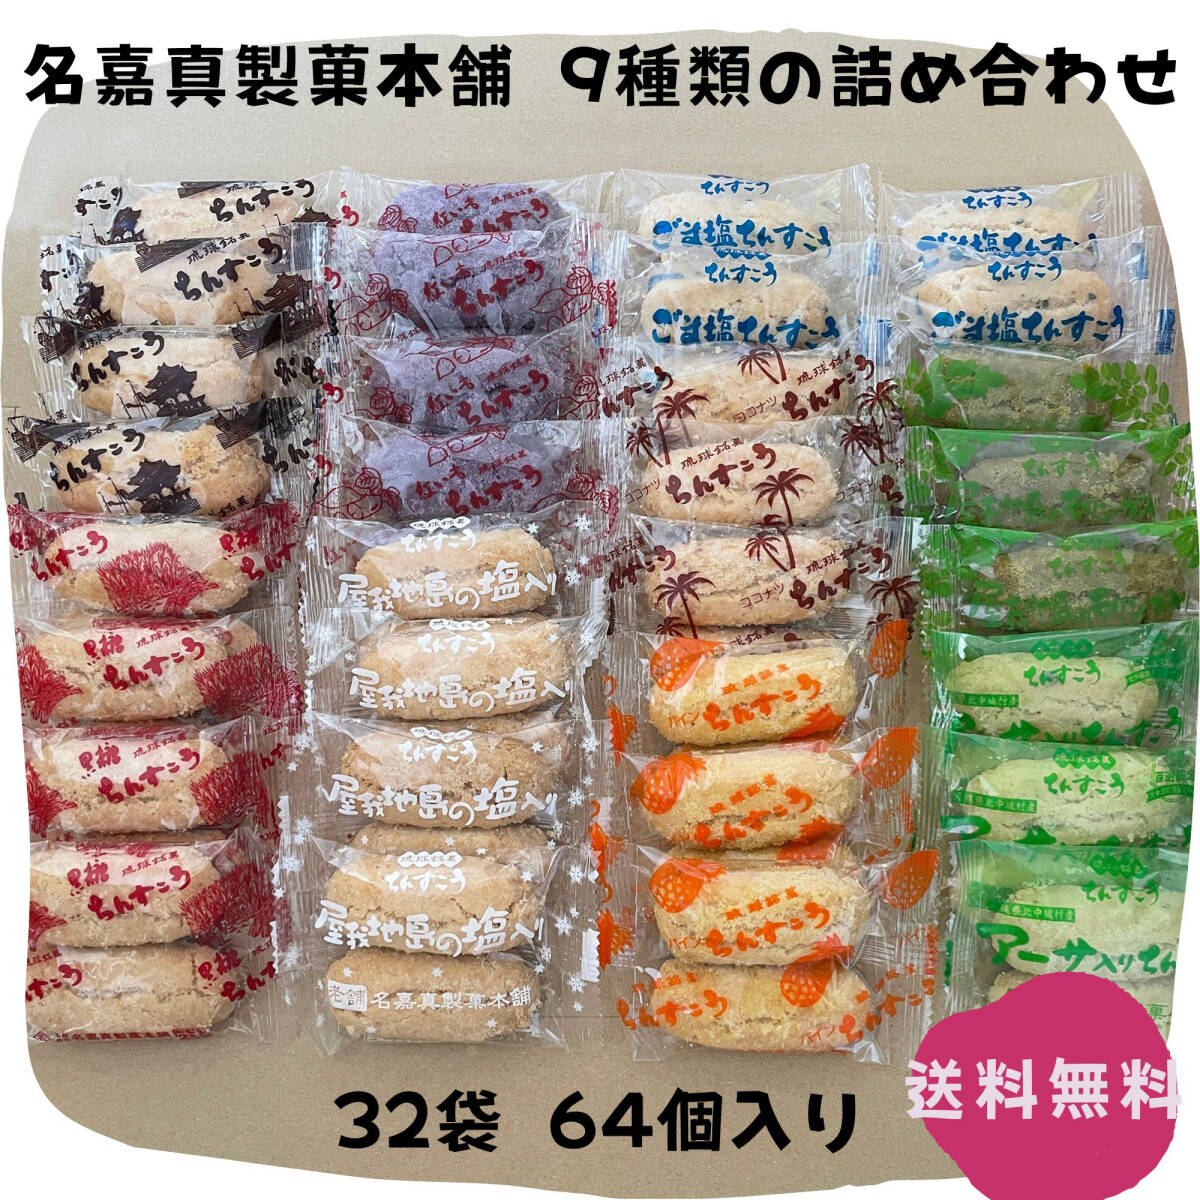 ちんすこう 9種類の詰め合わせ 32袋 64個 沖縄銘菓 名嘉真製菓本舗 お土産 お取り寄せの画像1